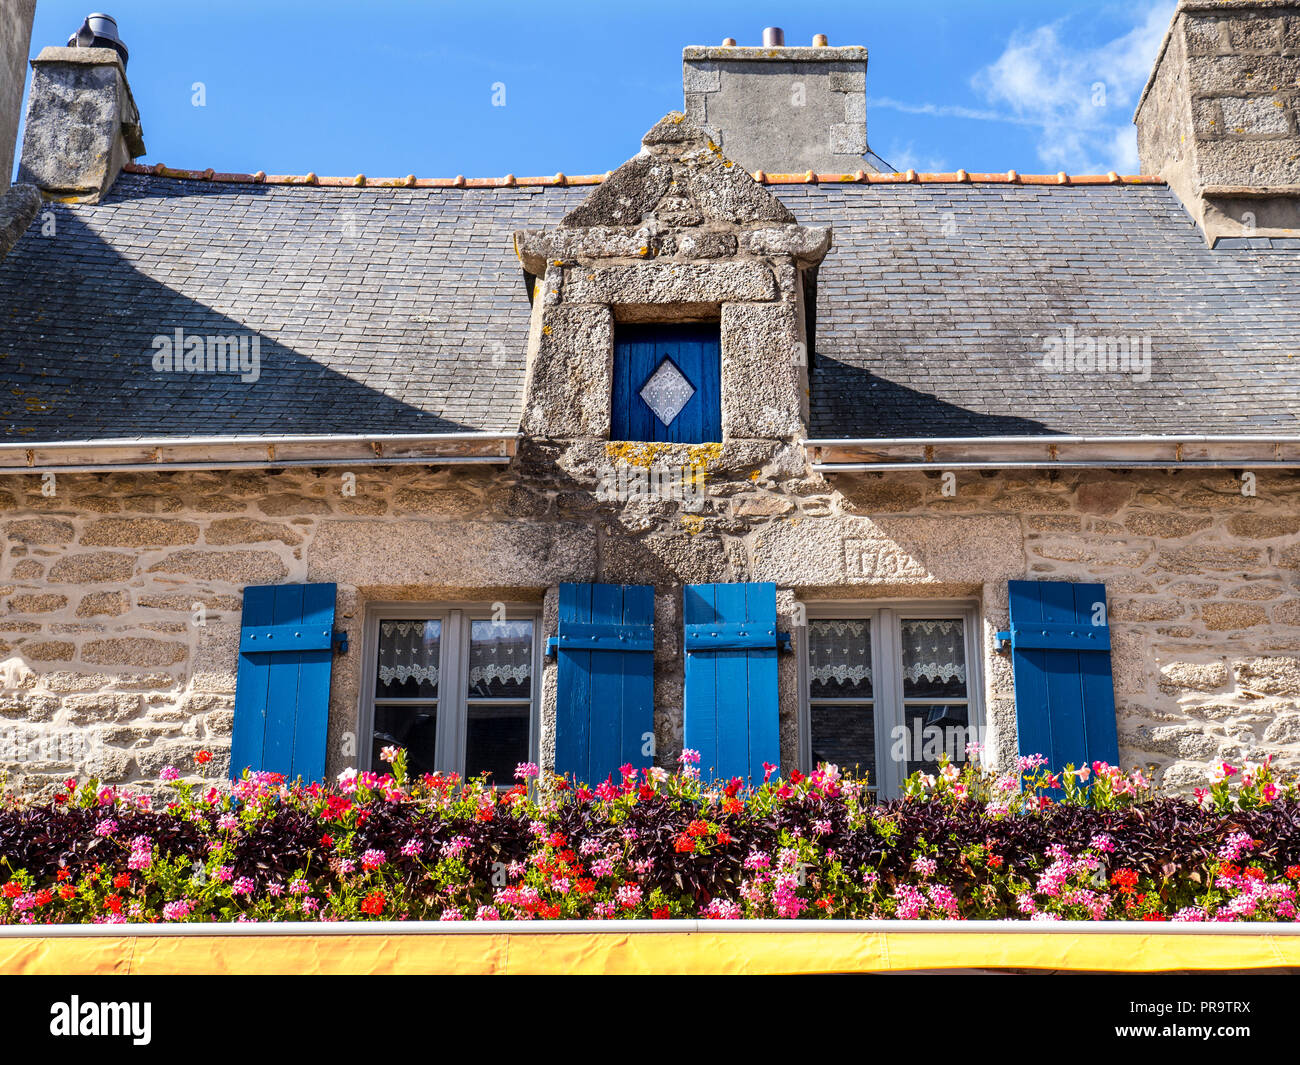 Bretagne Architektur Französische rustikale Restaurant 'La Port au Vin' mit Blumenarrangement Fensterläden Ville in der Nähe Fouesnant bretagne finistere Frankreich Stockfoto